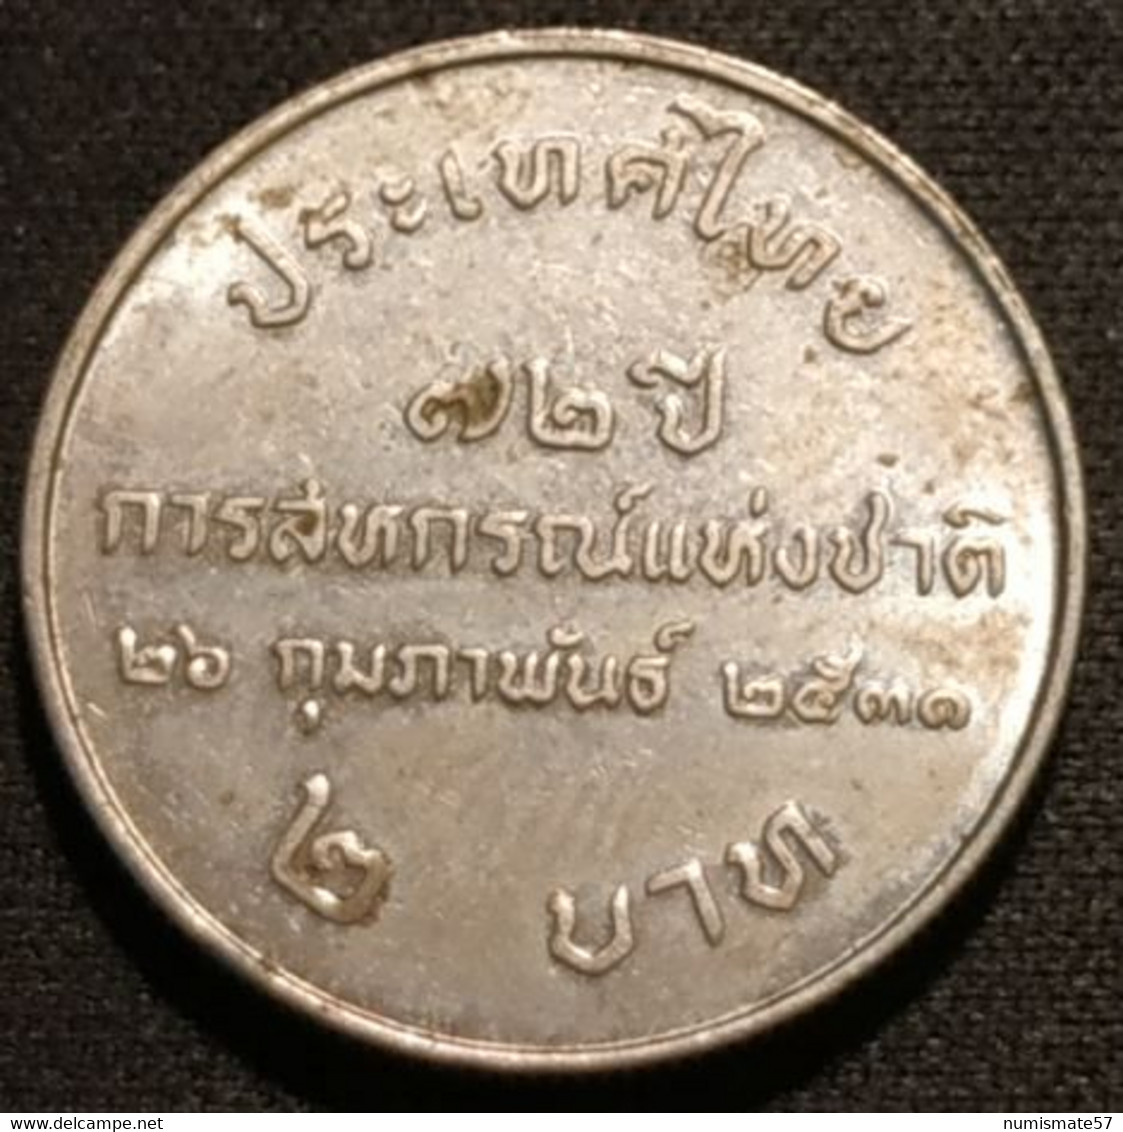 THAILANDE - THAILAND - 2 BAHT 1988 ( 2531 ) - Thai Cooperatives - KM 204 - Thailand